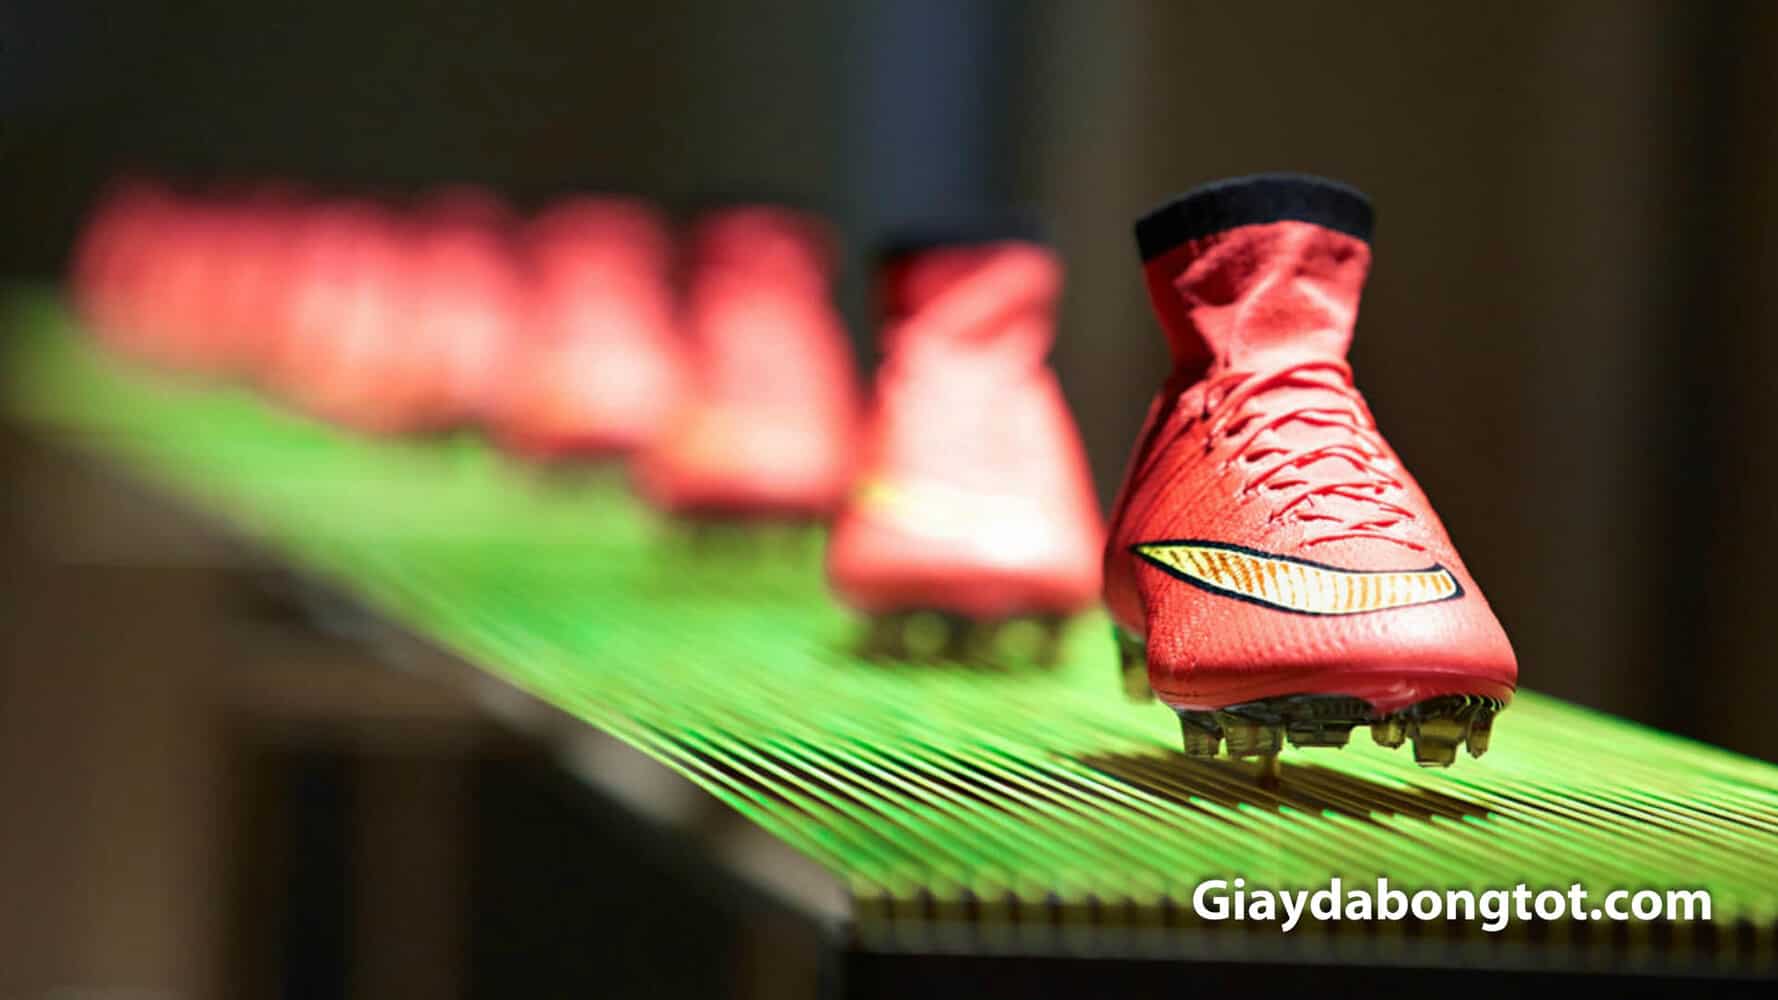 Da vải sợi dệt là xu hướng sản xuất của hiện tại và tương lai của giày bóng đá